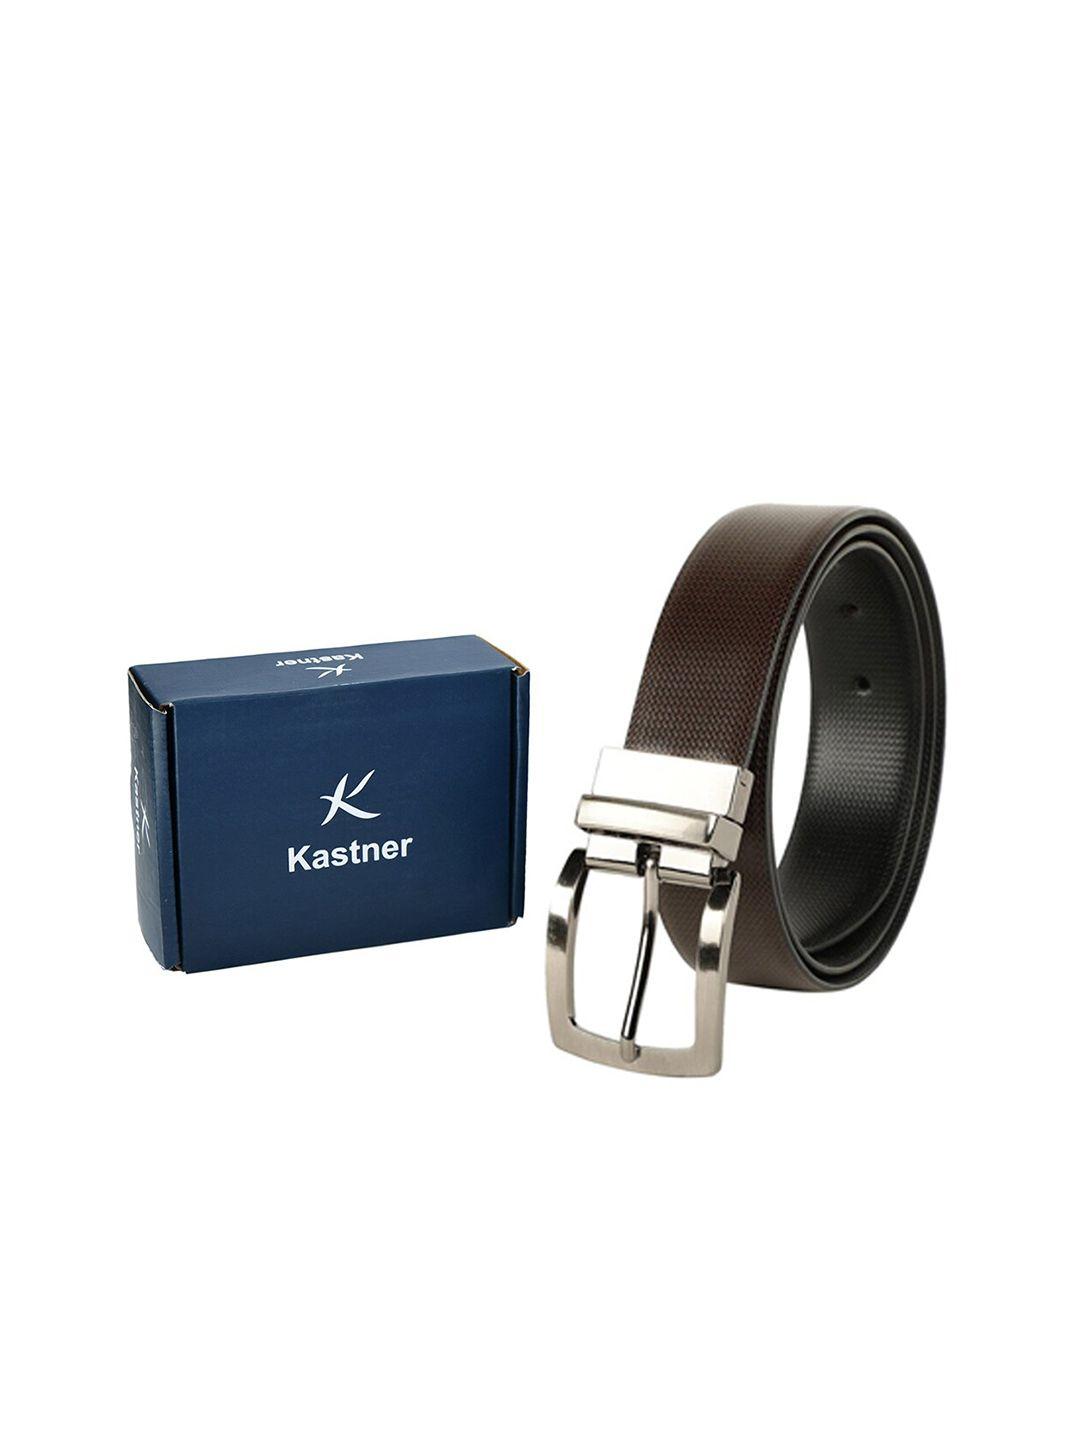 kastner-men-black-&-brown-textured-leather-reversible-formal-belt